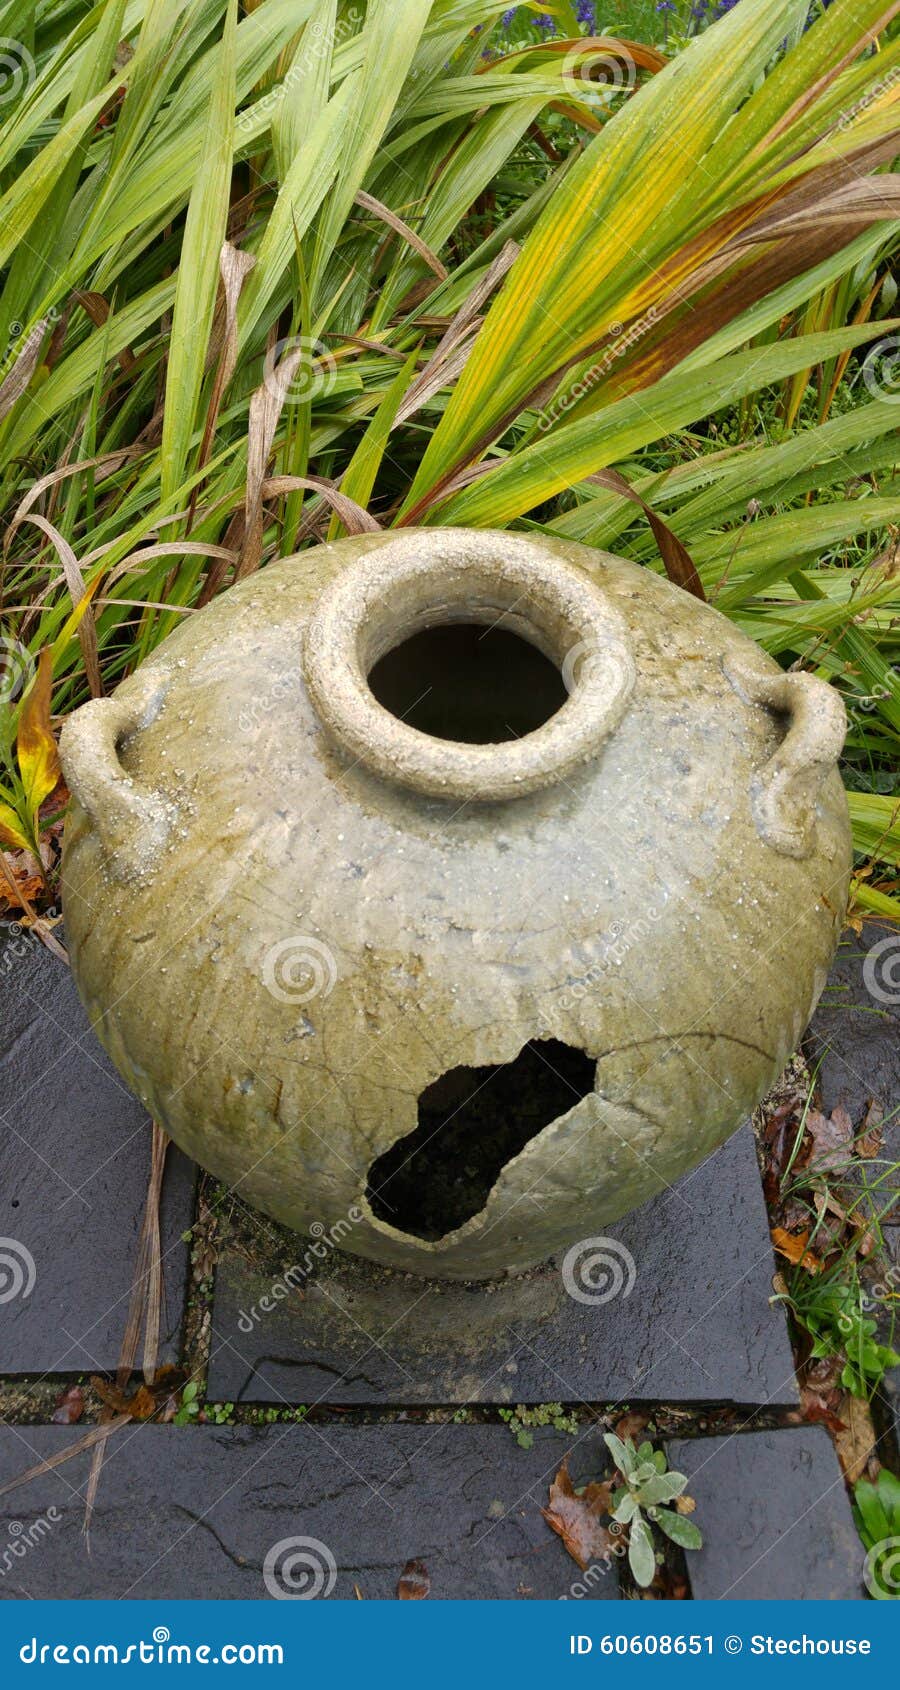 an english garden: a vase